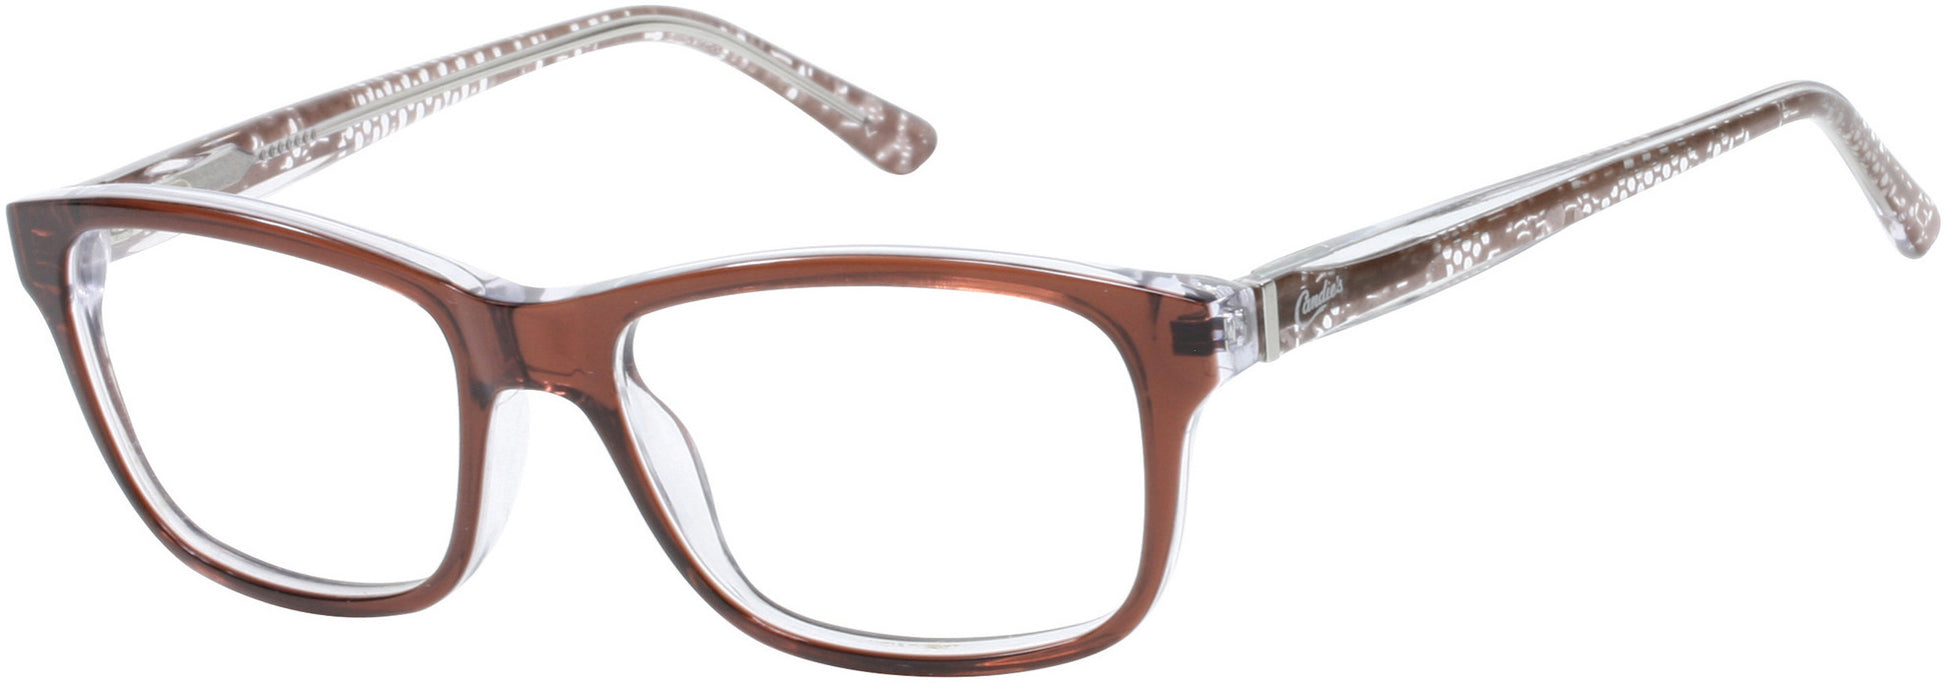 Candies CAA136 Eyeglasses D96-D96 - Brown